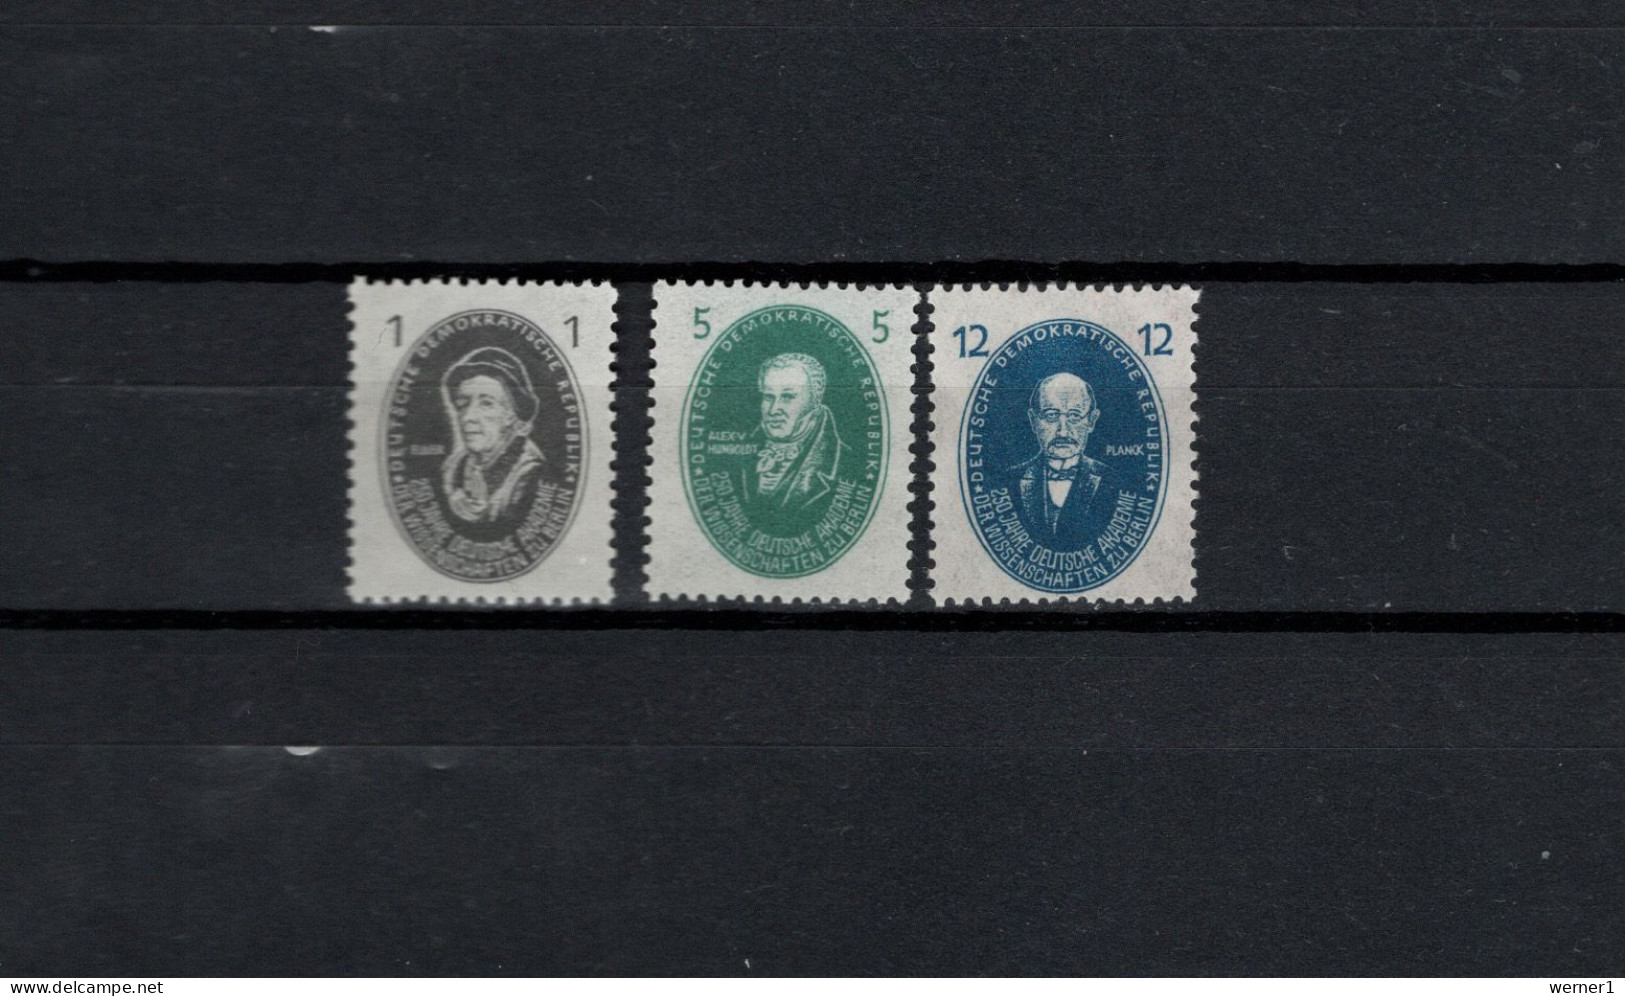 DDR 1950 Space, Scientists, Euler, Humboldt, Planck 3 Stamps MNH - Europe